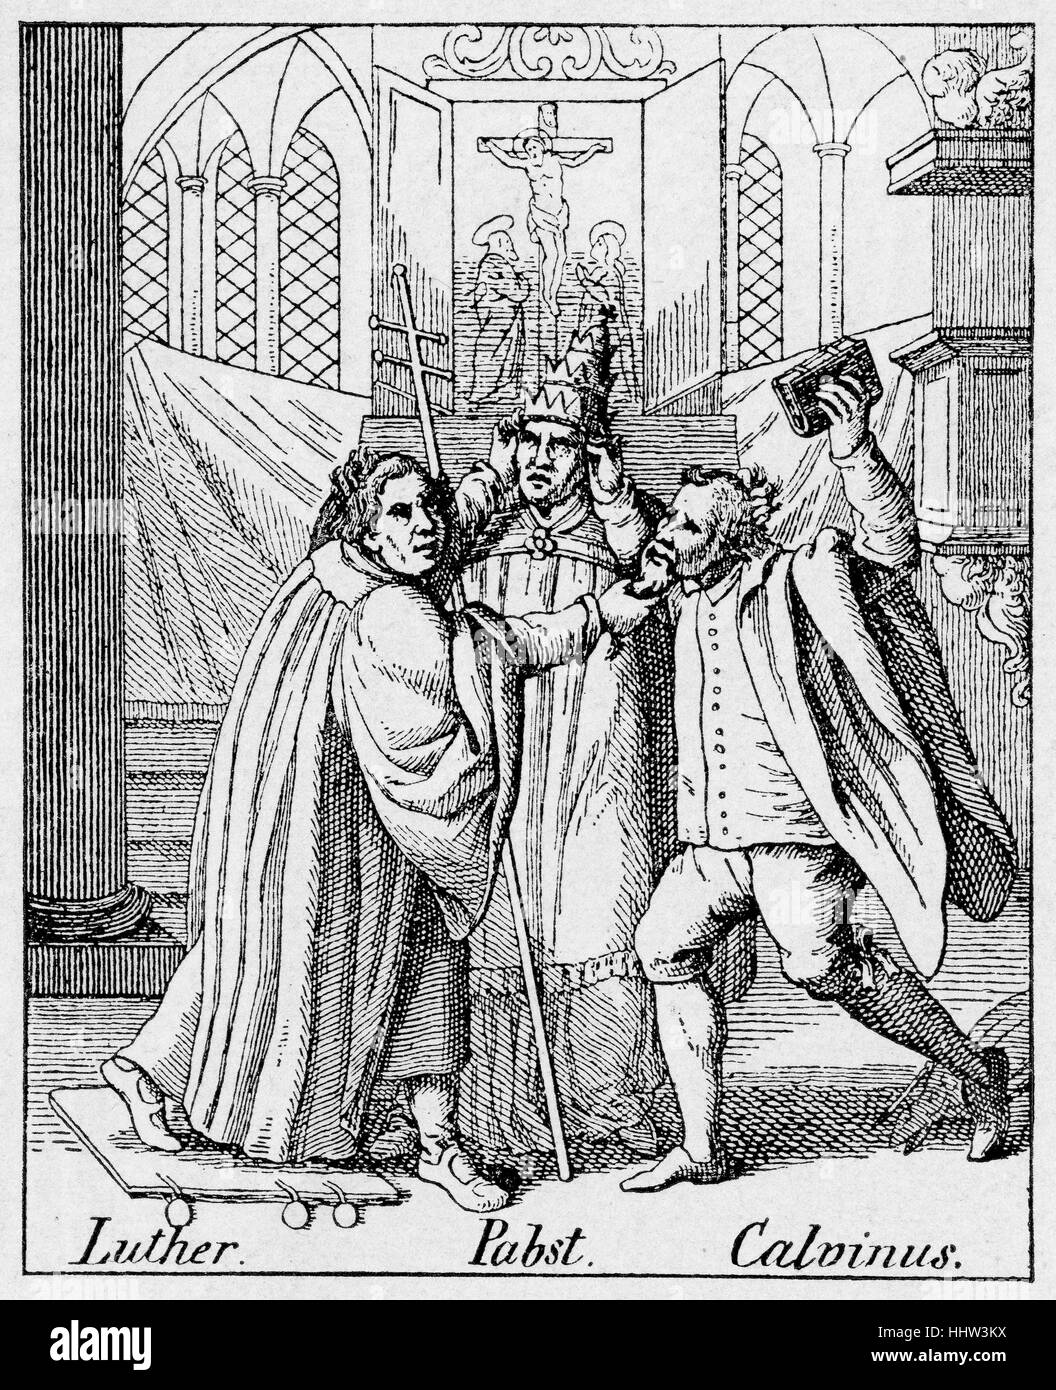 La reforma era una caricatura, representando la lucha entre Martin Lutero,  Calvino y el Papa, con cada tira del pelo de los demás. El título dice:  "Oh, querido maravilla buscar en Cristo,